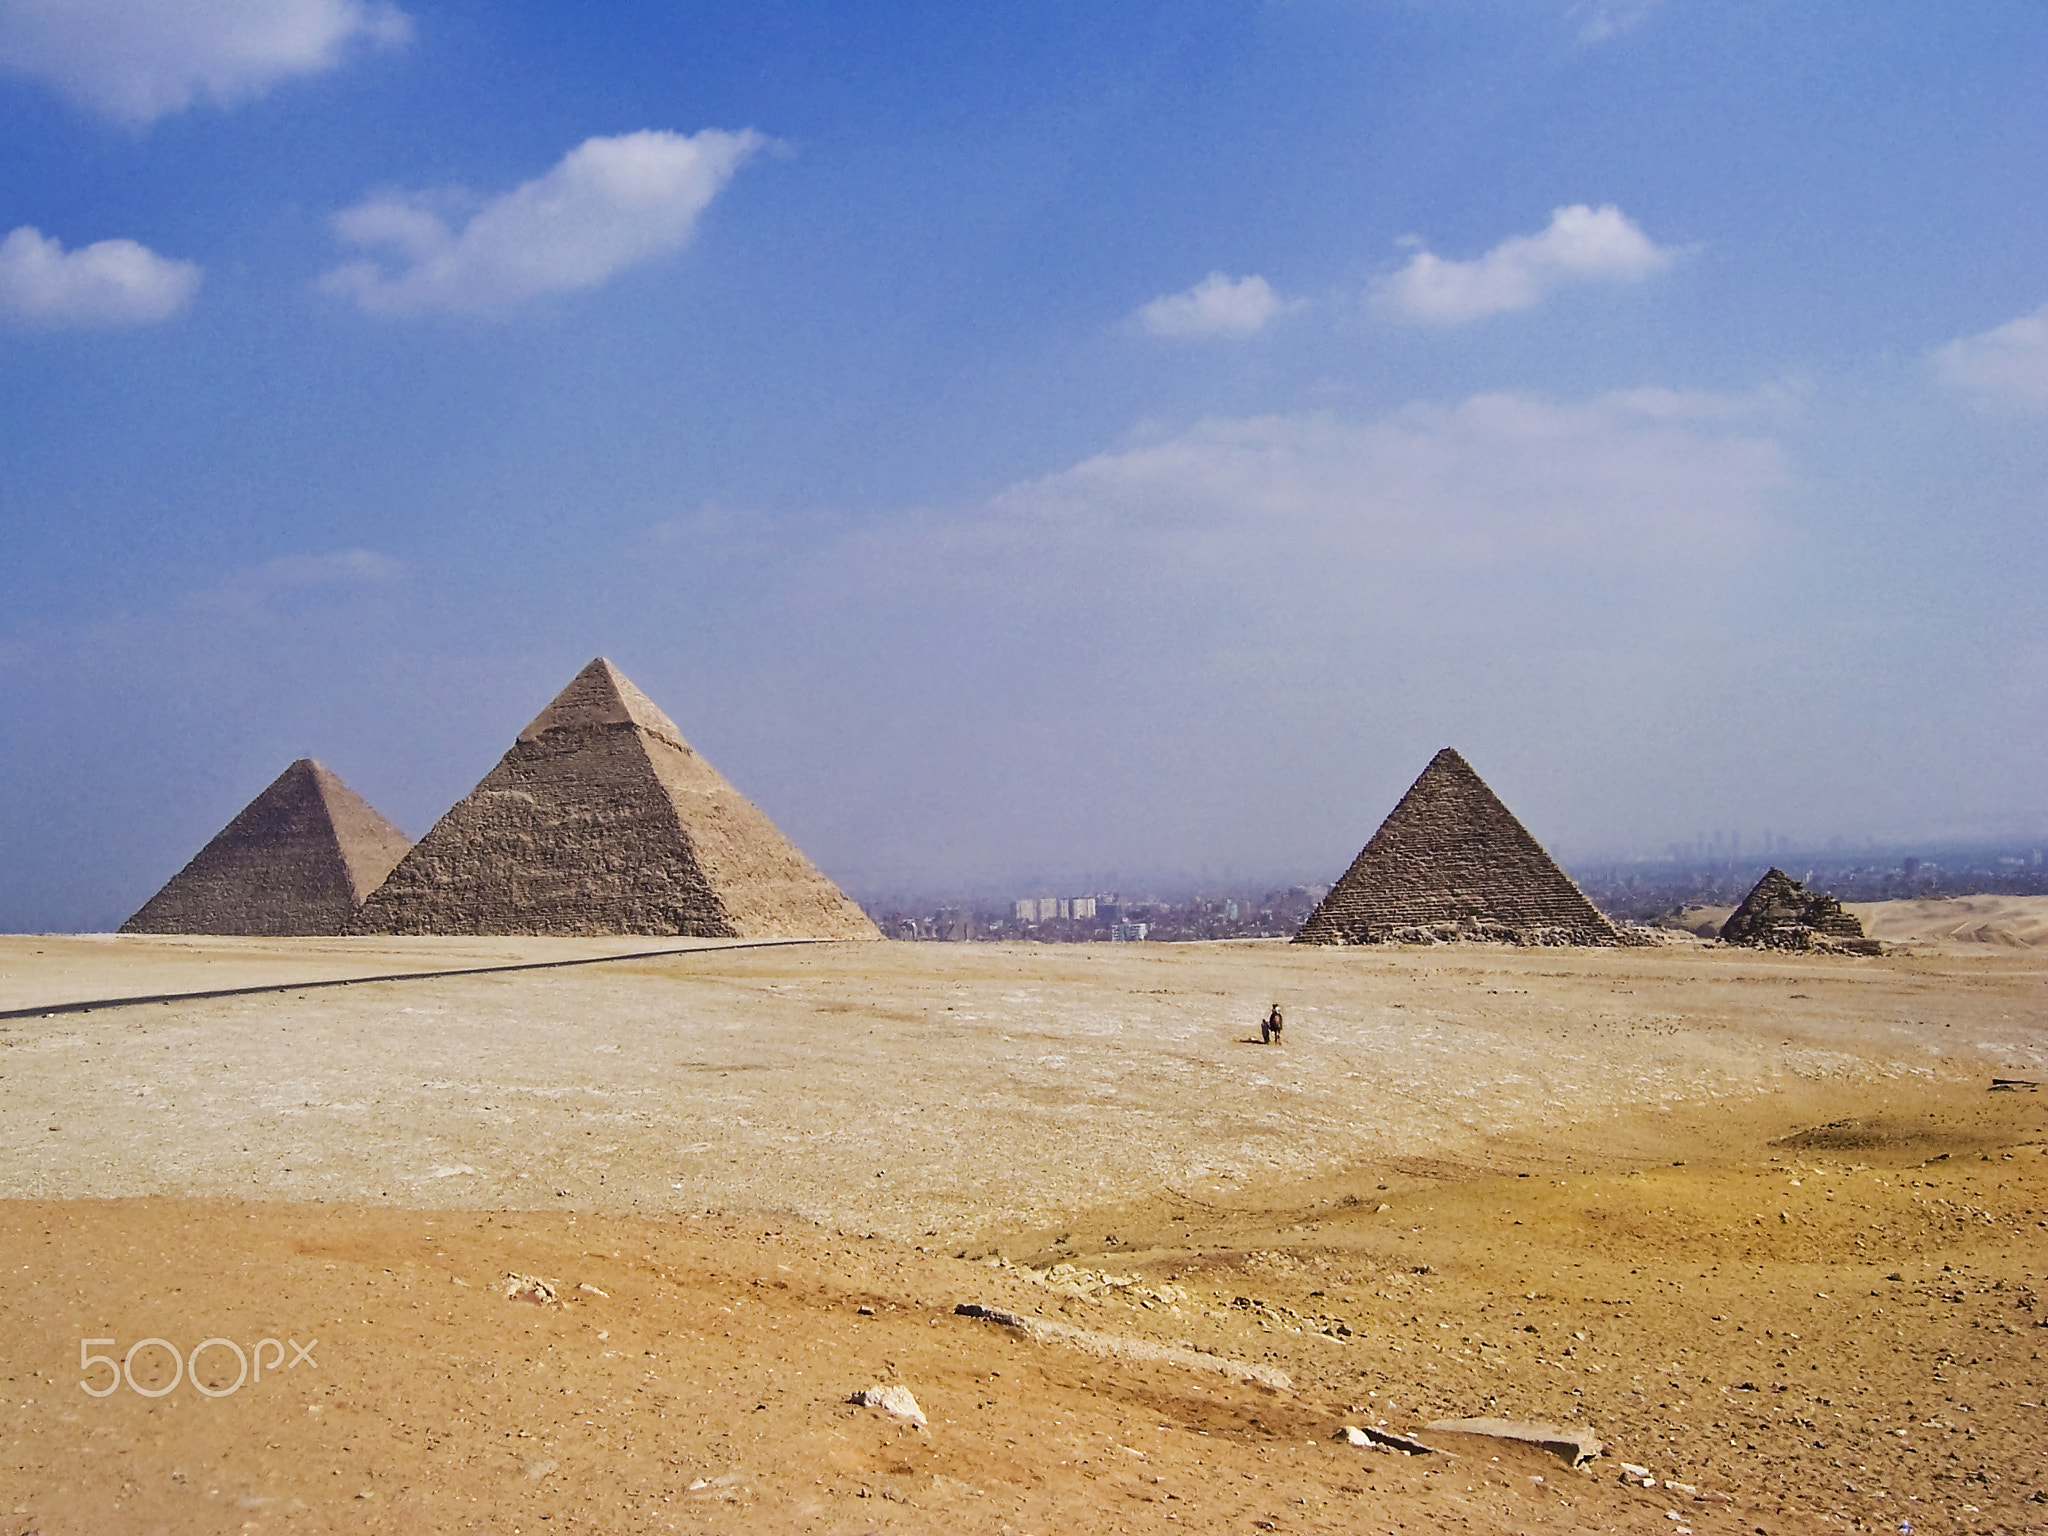 Big pyramids of Egypt